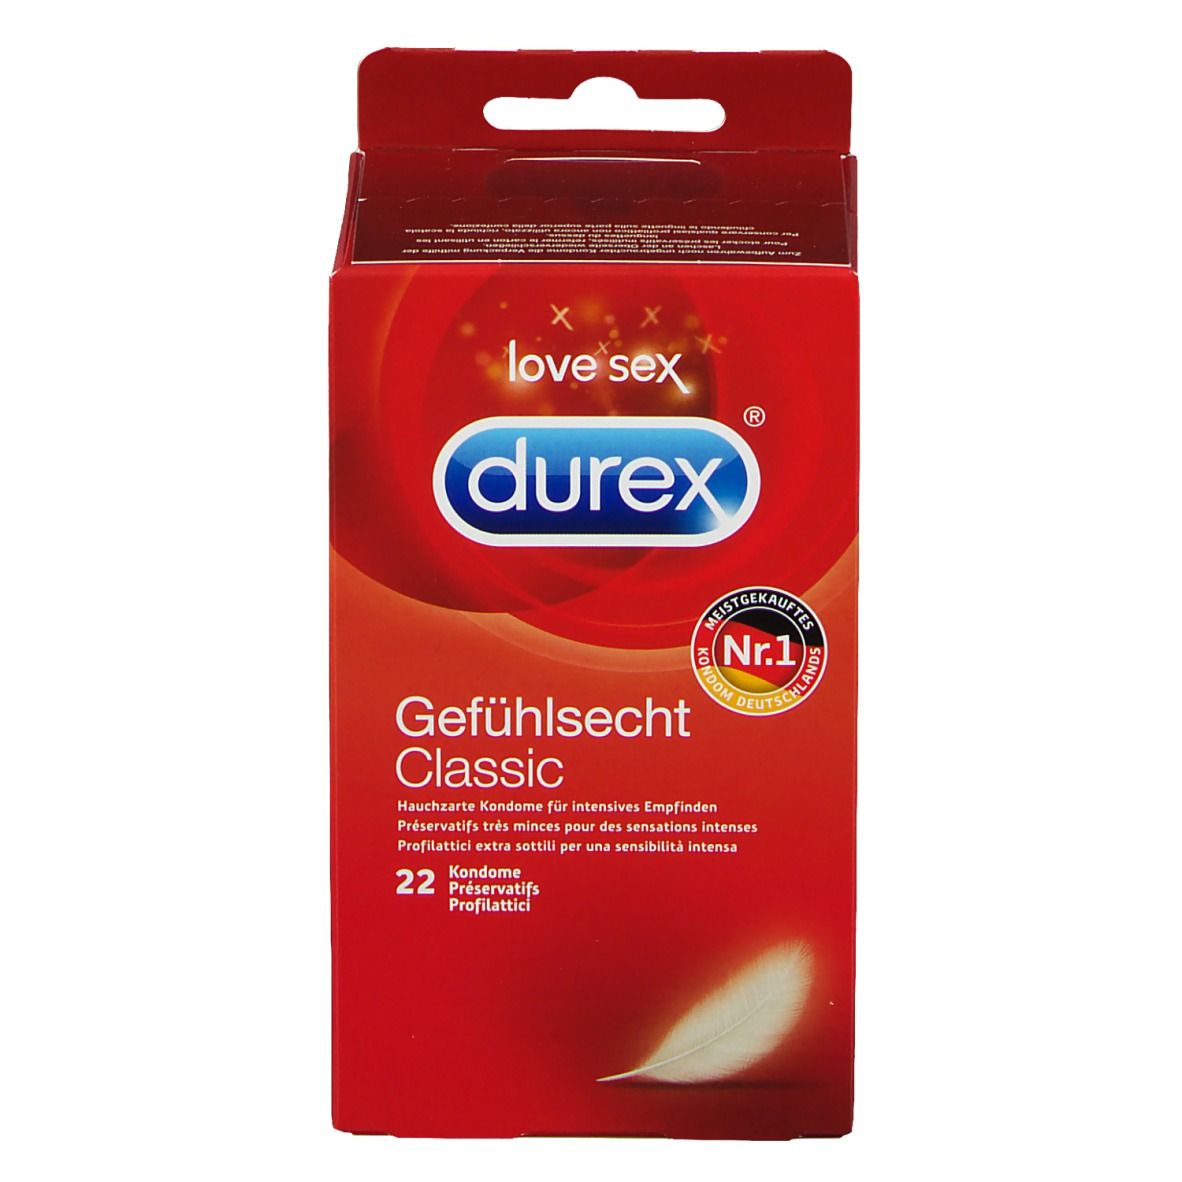 DUREX® Gefühlsecht hauchzarte Kondome für intensives Empfinden